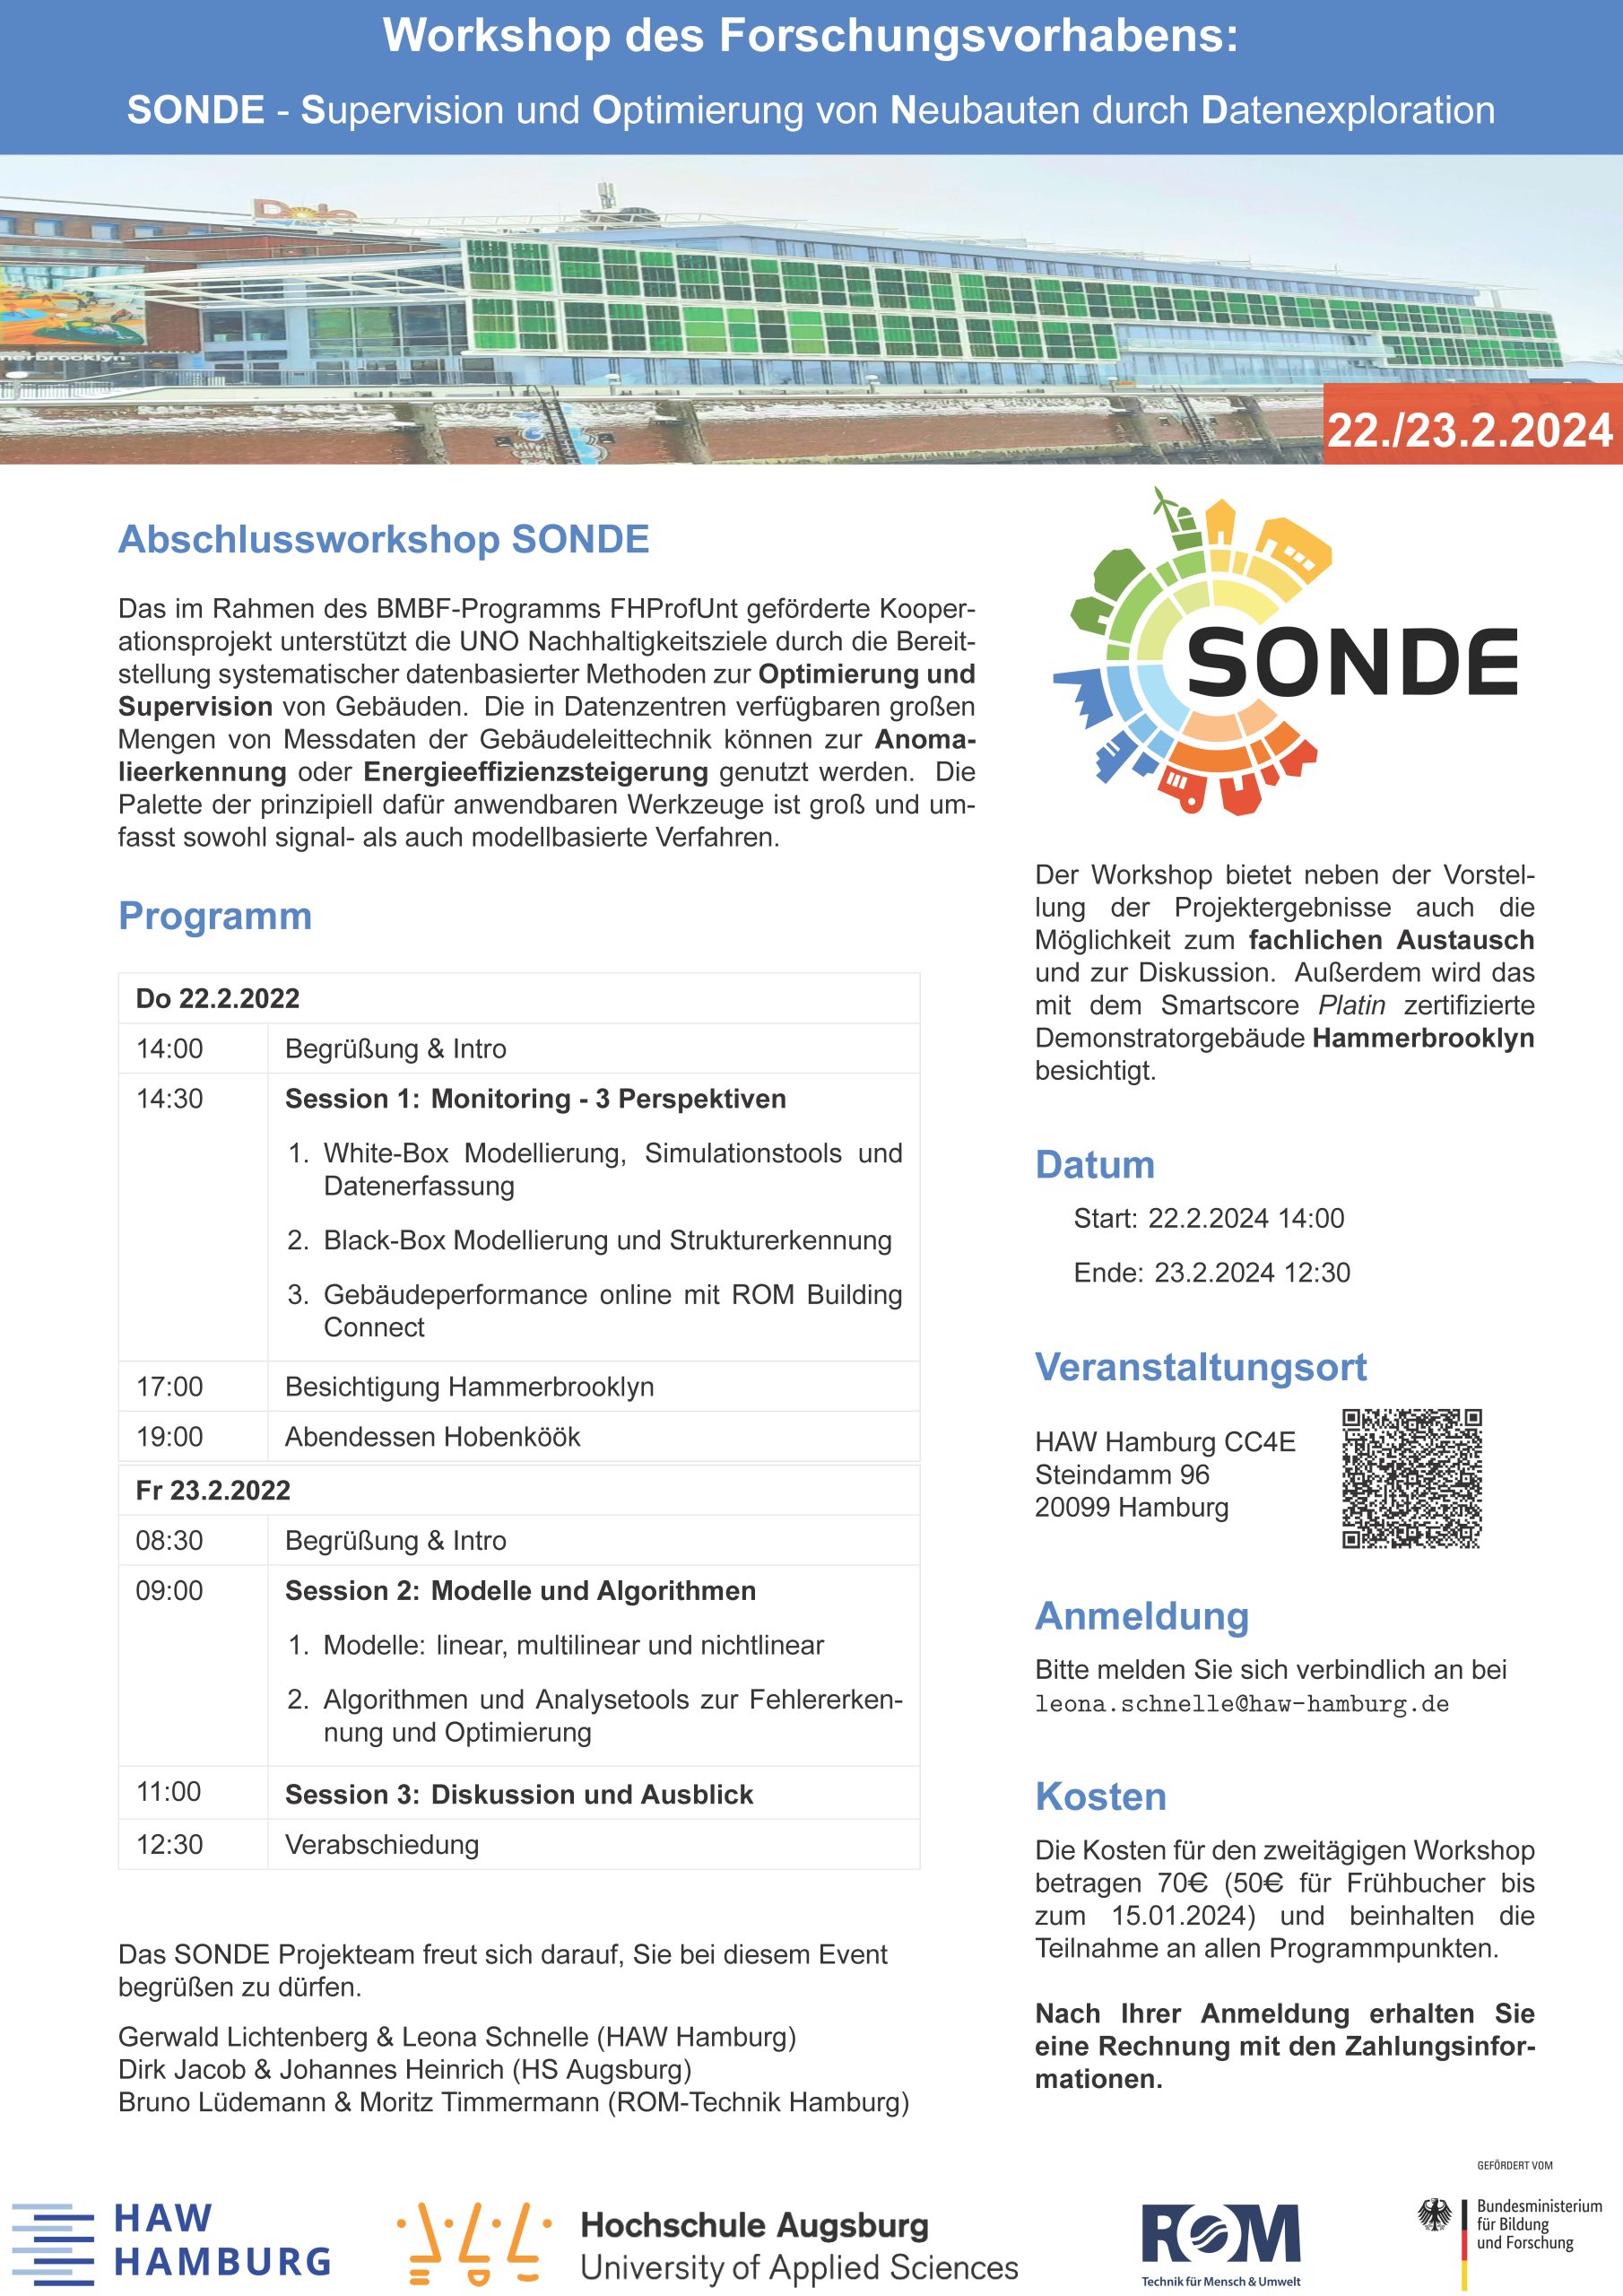 Einladung zum Abschlussworkshop des Forschungsvorhabens SONDE Supervision und Optimierung von Neubauten durch Datenexploration